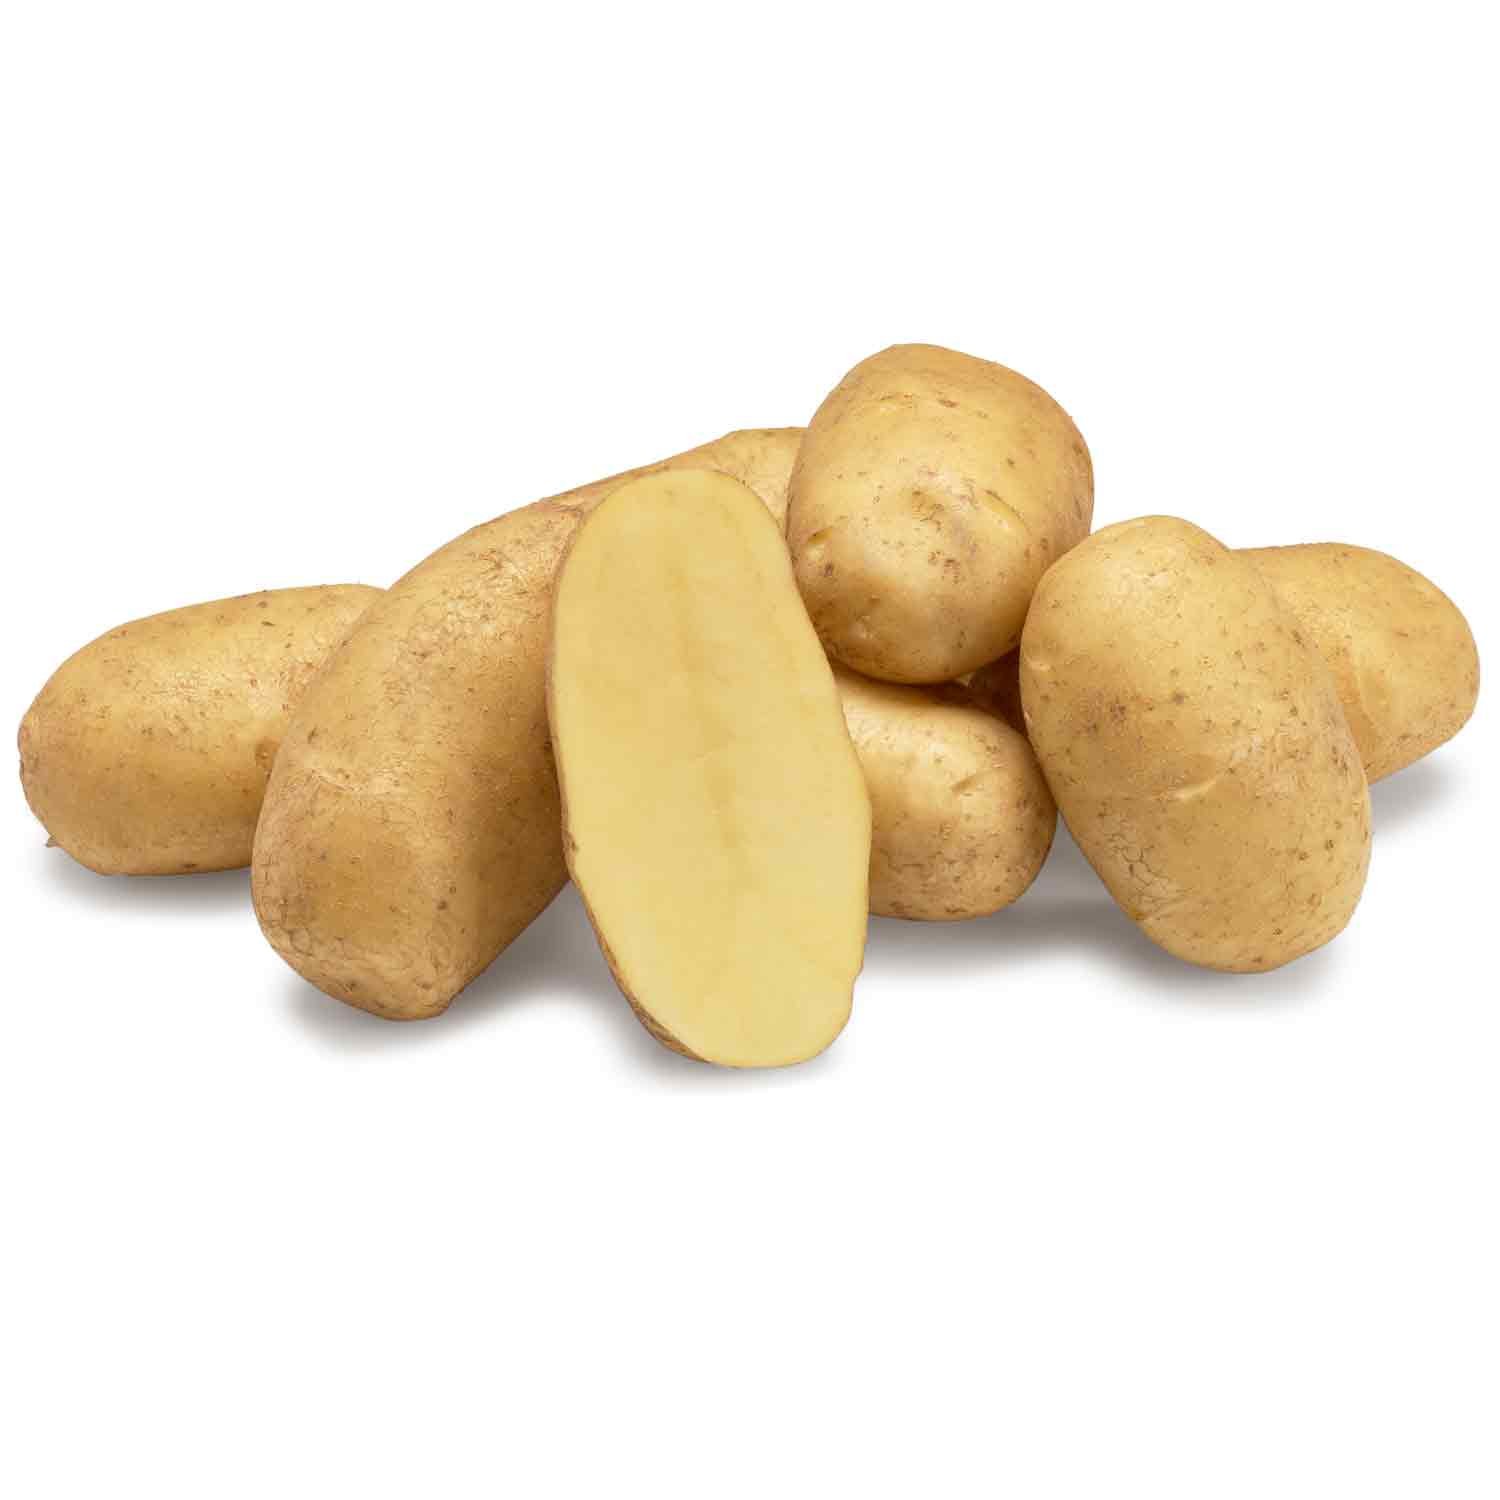 Ditta læggekartofler, almindelig kartoffel